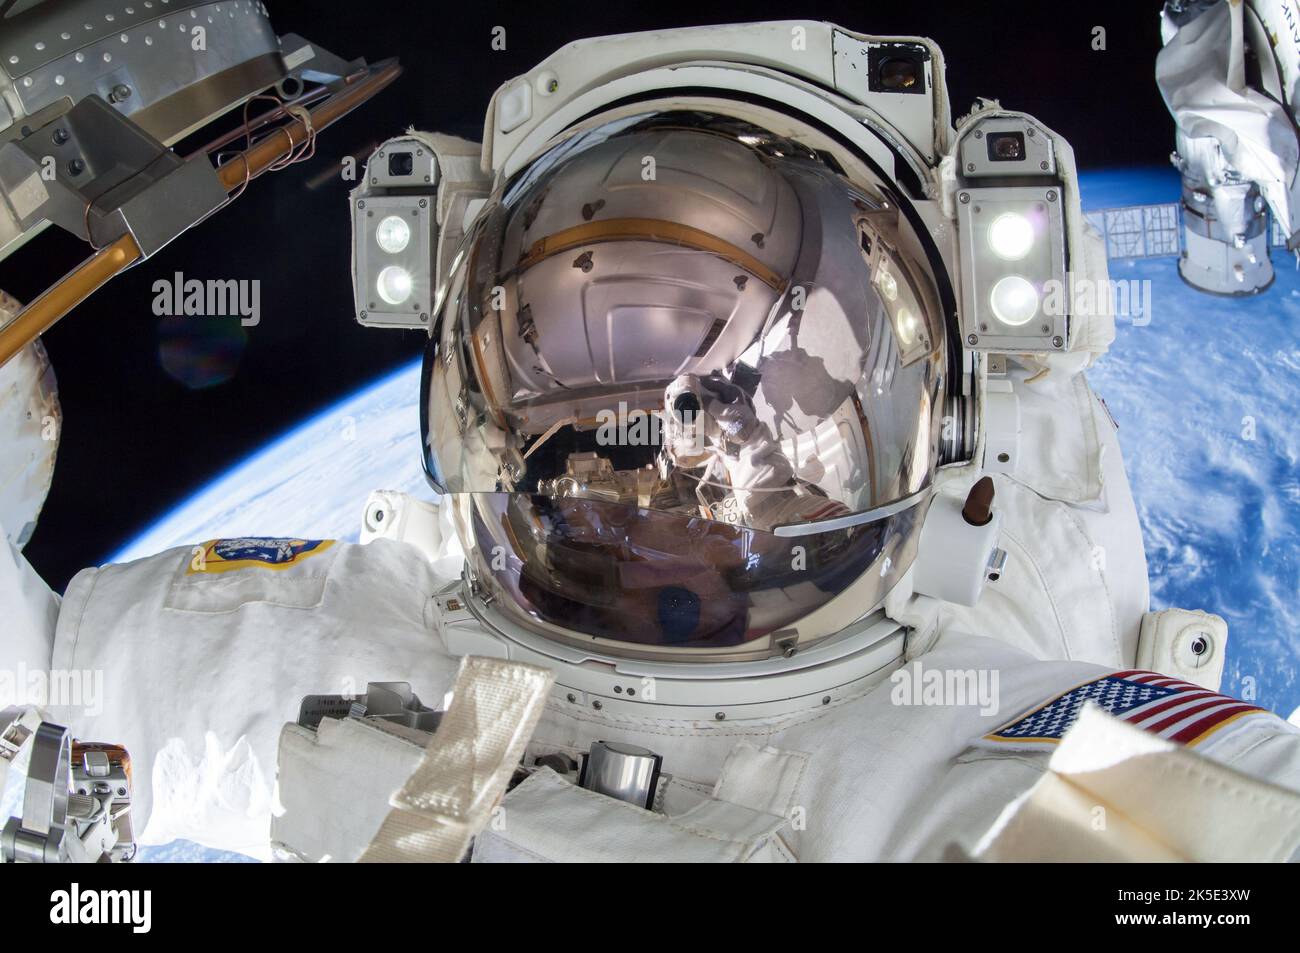 L'astronauta degli Stati Uniti Terry Virts ha twittato i suoi seguaci questa immagine 1 marzo 2015 dopo aver completato una serie di astronauti con il suo partner Barry 'Butch' Wilmore per preparare la Stazione spaziale Internazionale per il prossimo veicolo spaziale commerciale degli Stati Uniti attualmente in sviluppo. Virts ha commentato il tweet: 'Missione compiuta - 3 spacewalks, 800 piedi di cavo, 4 antenne, 3 riflettori laser, 1 braccio robotico ingrassato.' Una versione ottimizzata di un'immagine NASA. Credit: NASA/T.Virts. - Limitazioni d'uso: Solo per uso editoriale. Da non presentare come un'approvazione. Foto Stock